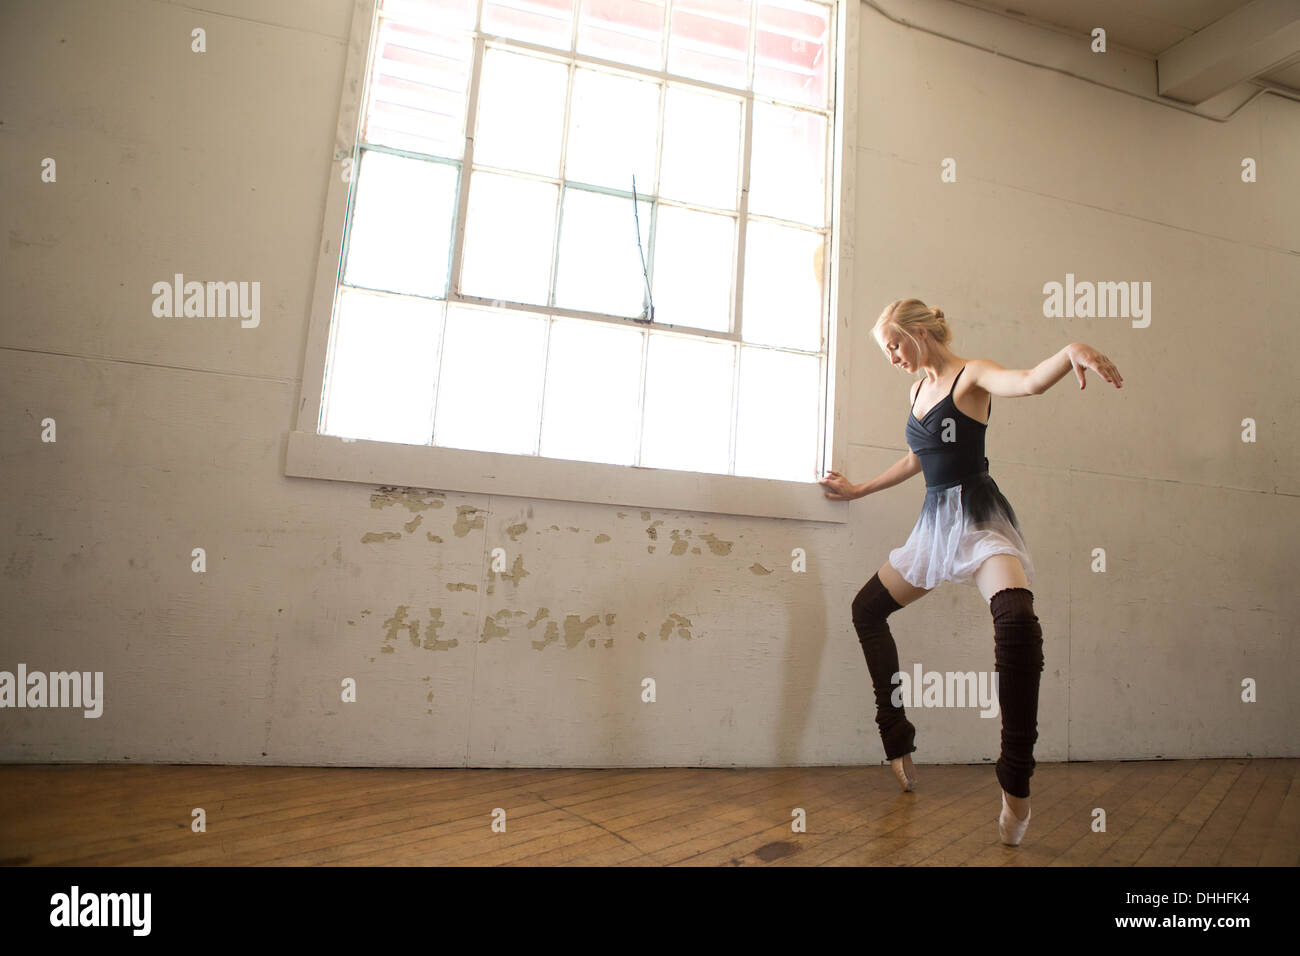 Danseur de Ballet sur pointe des pieds en studio Banque D'Images